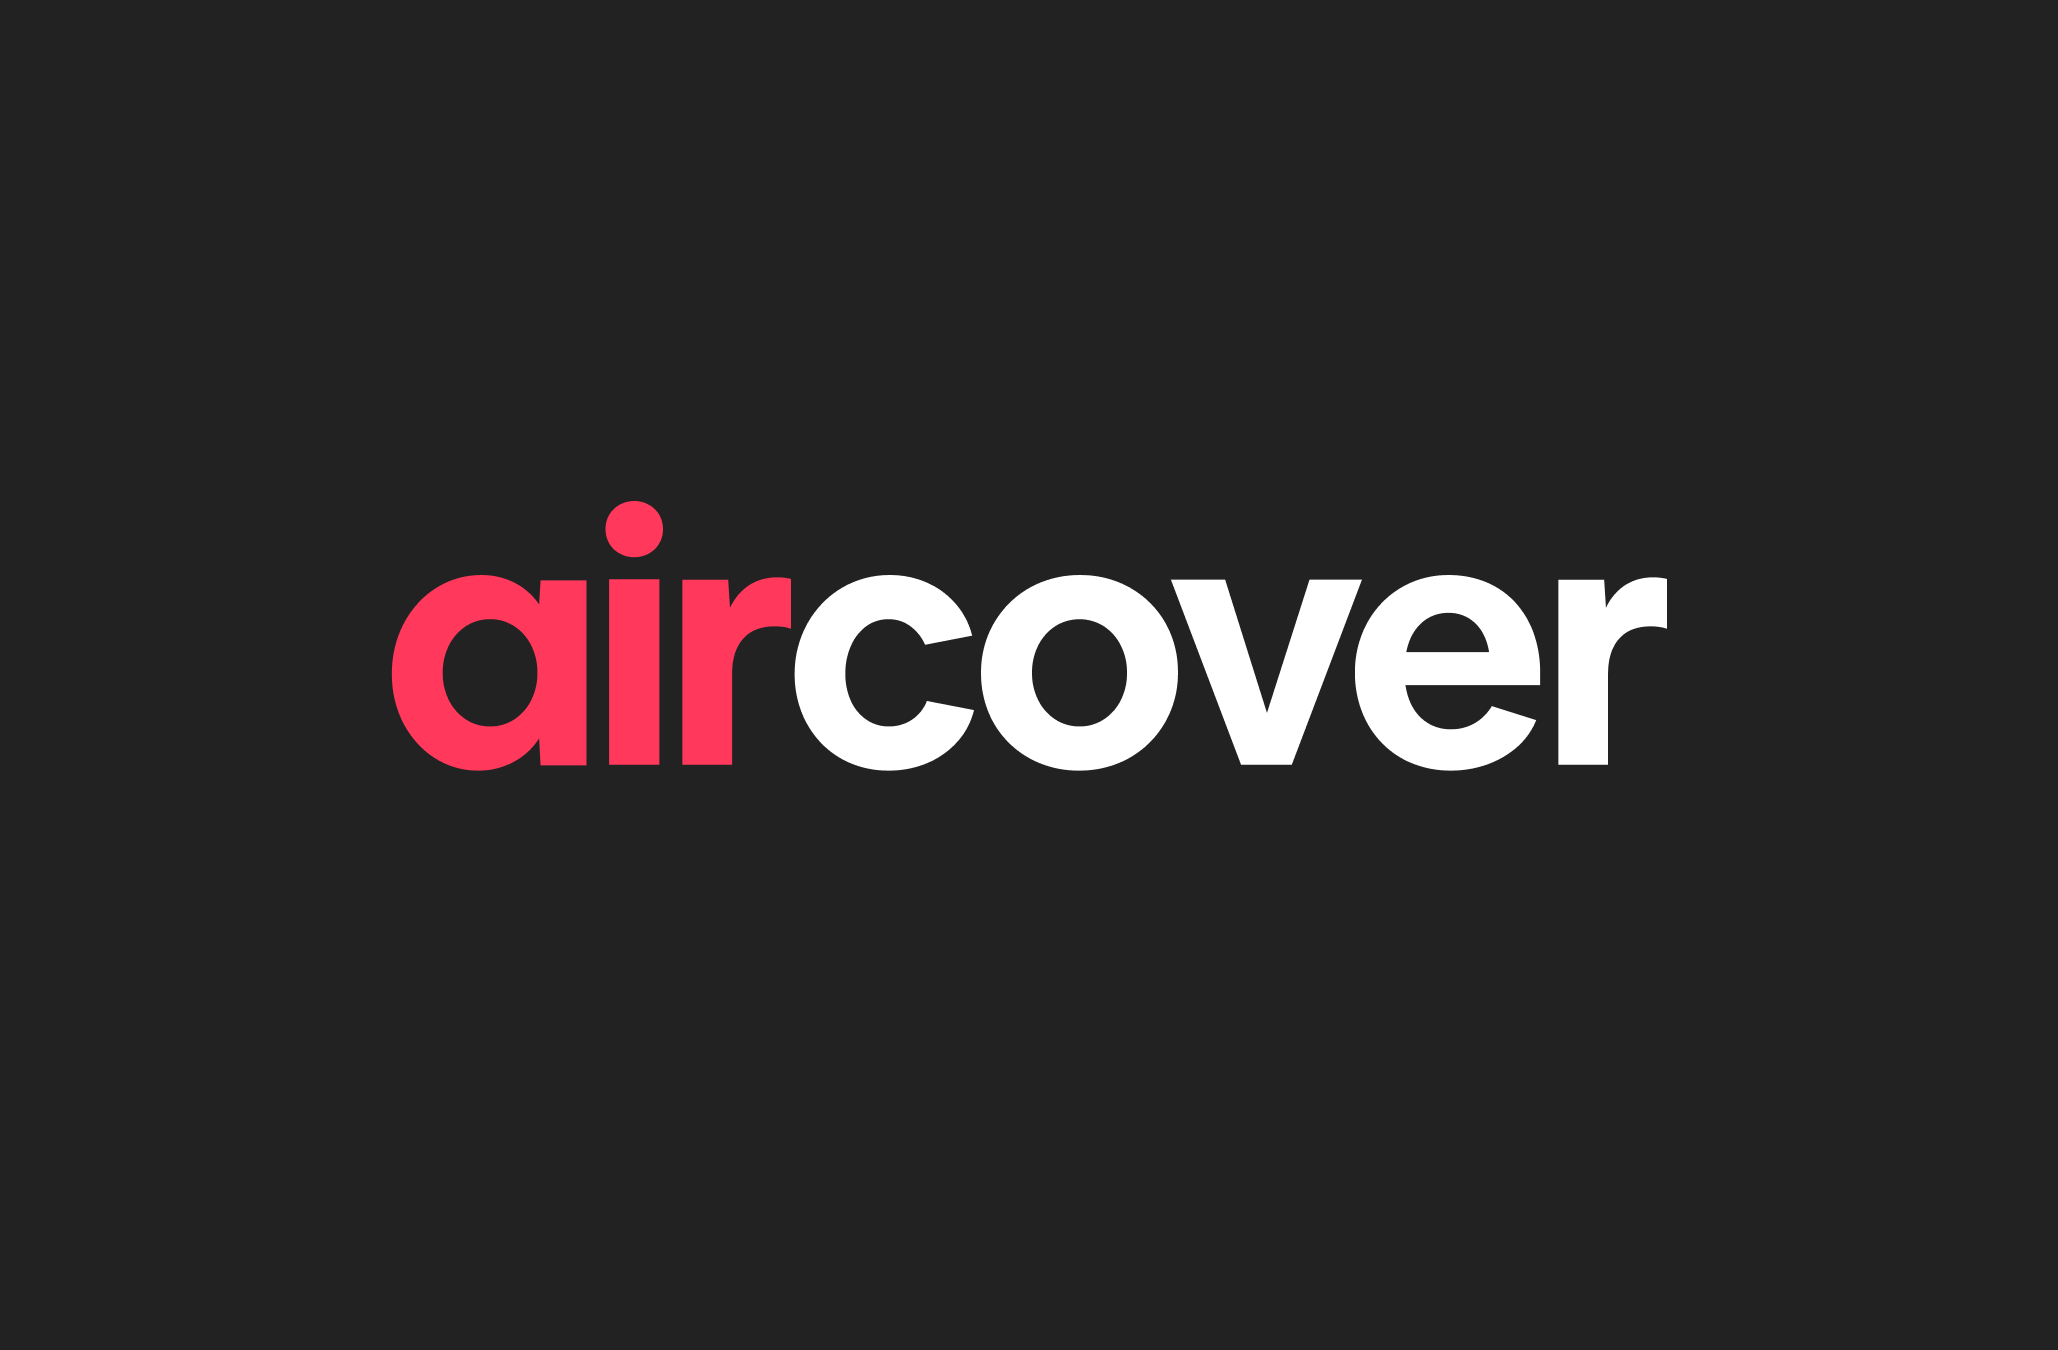 Logo AirCover je napísané červeným a bielym písmom na čiernom pozadí.